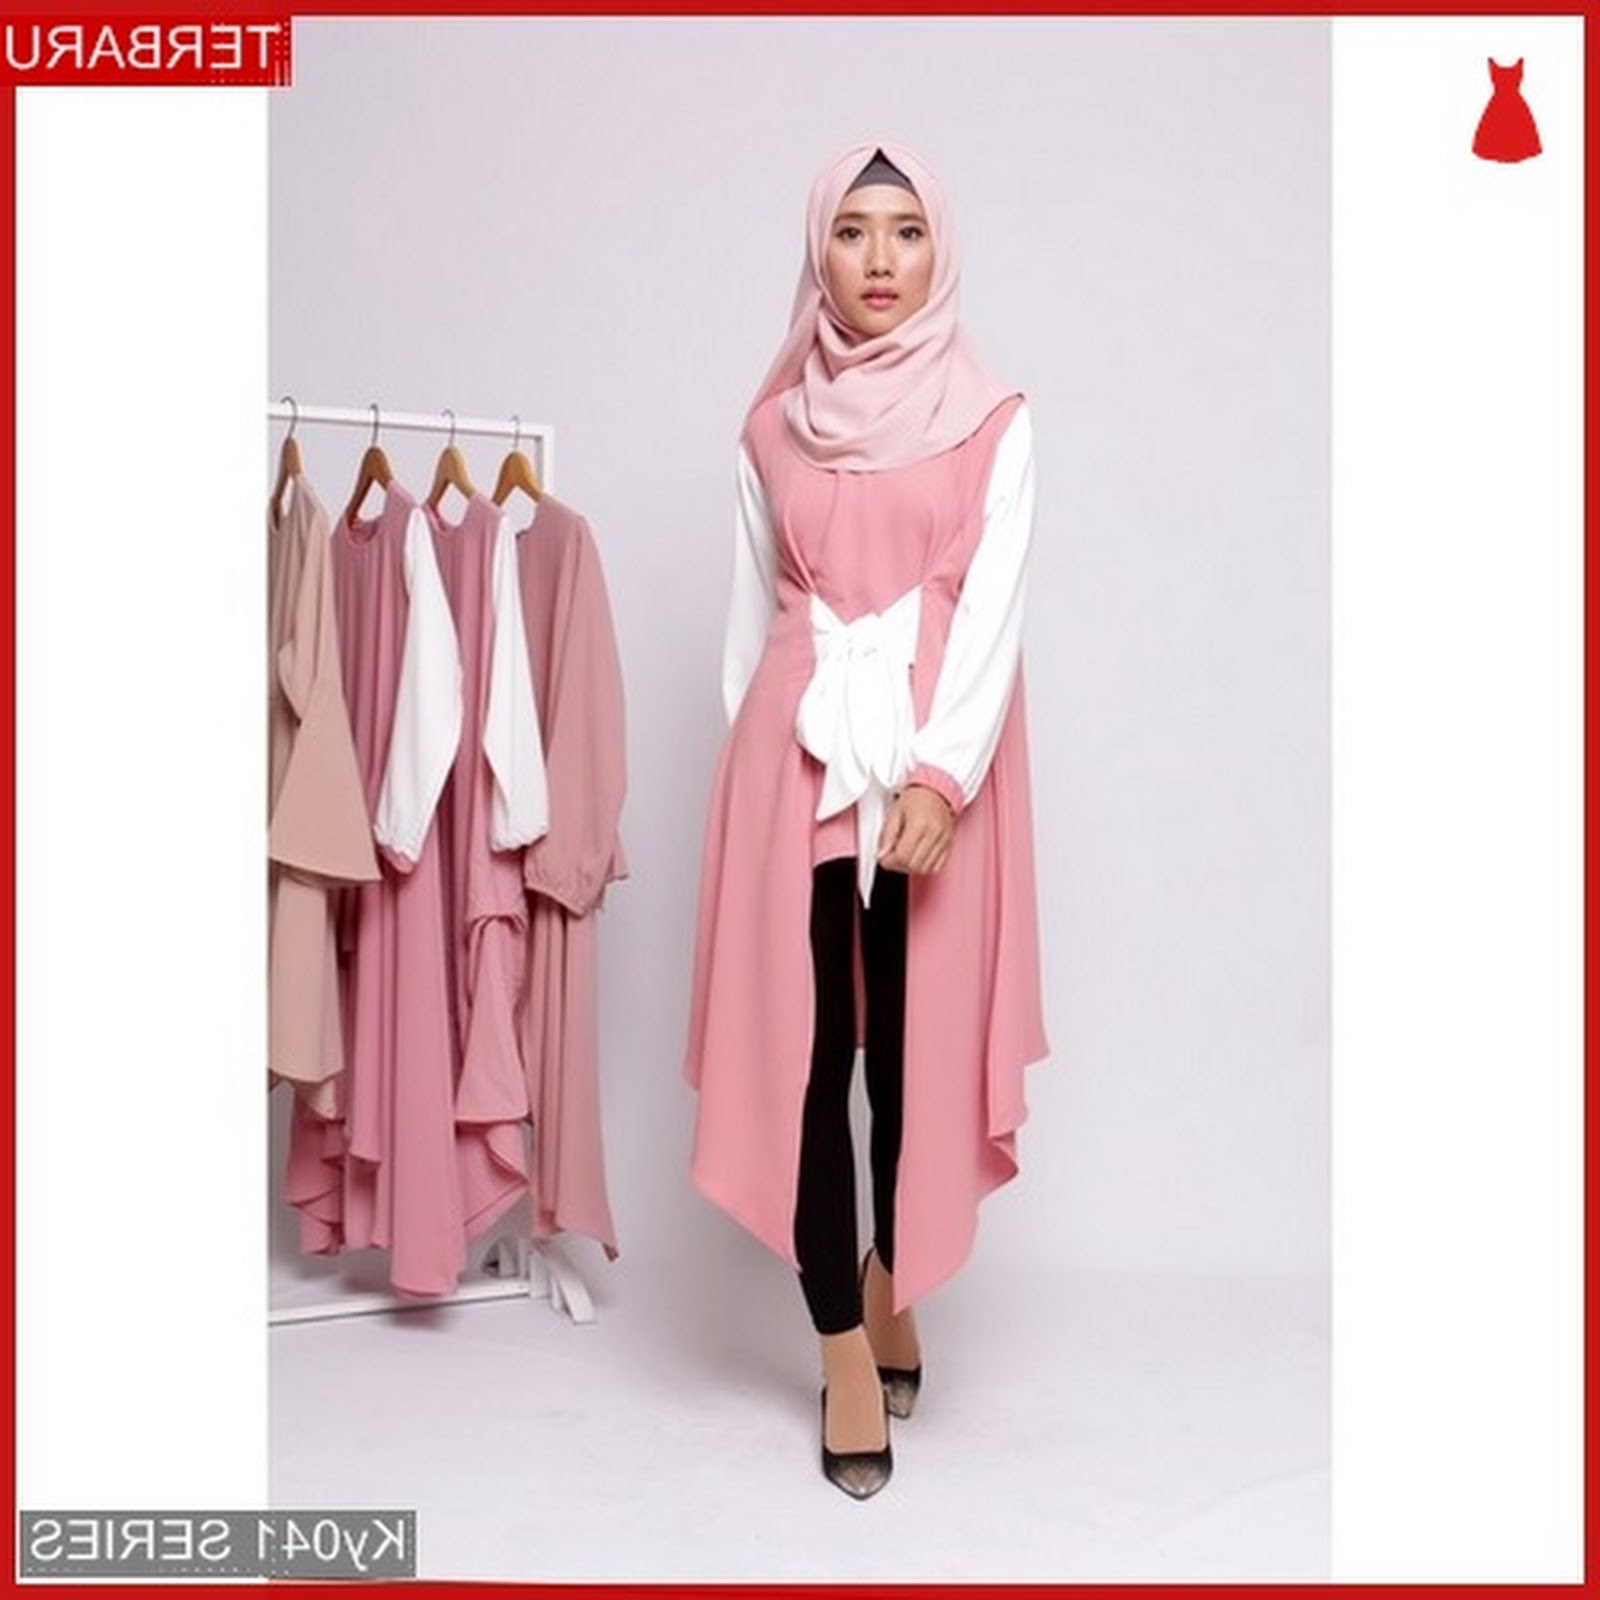 Inspirasi Baju Lebaran Bagus Drdp Dapatkan Baju Muslim Lebaran Paling Keren Terbaru Di Bmg